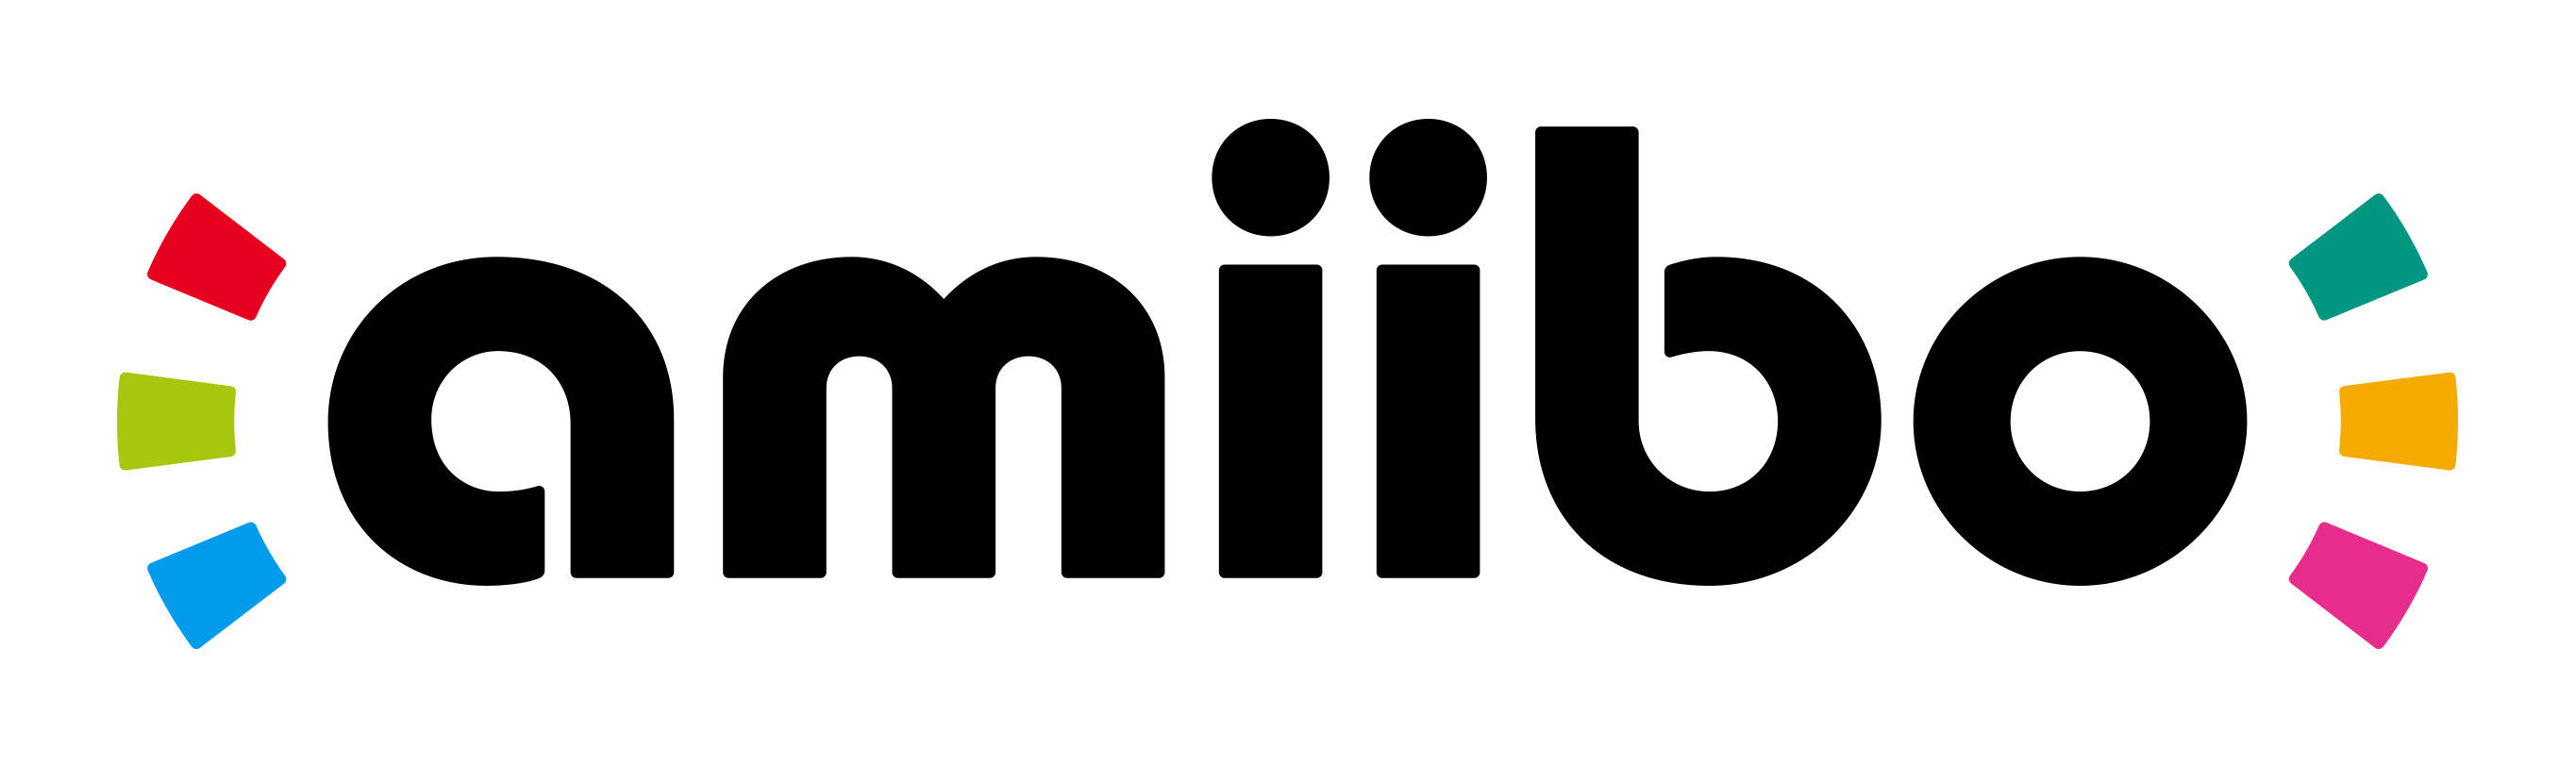 Amiibo Logo - Amiibo Logos